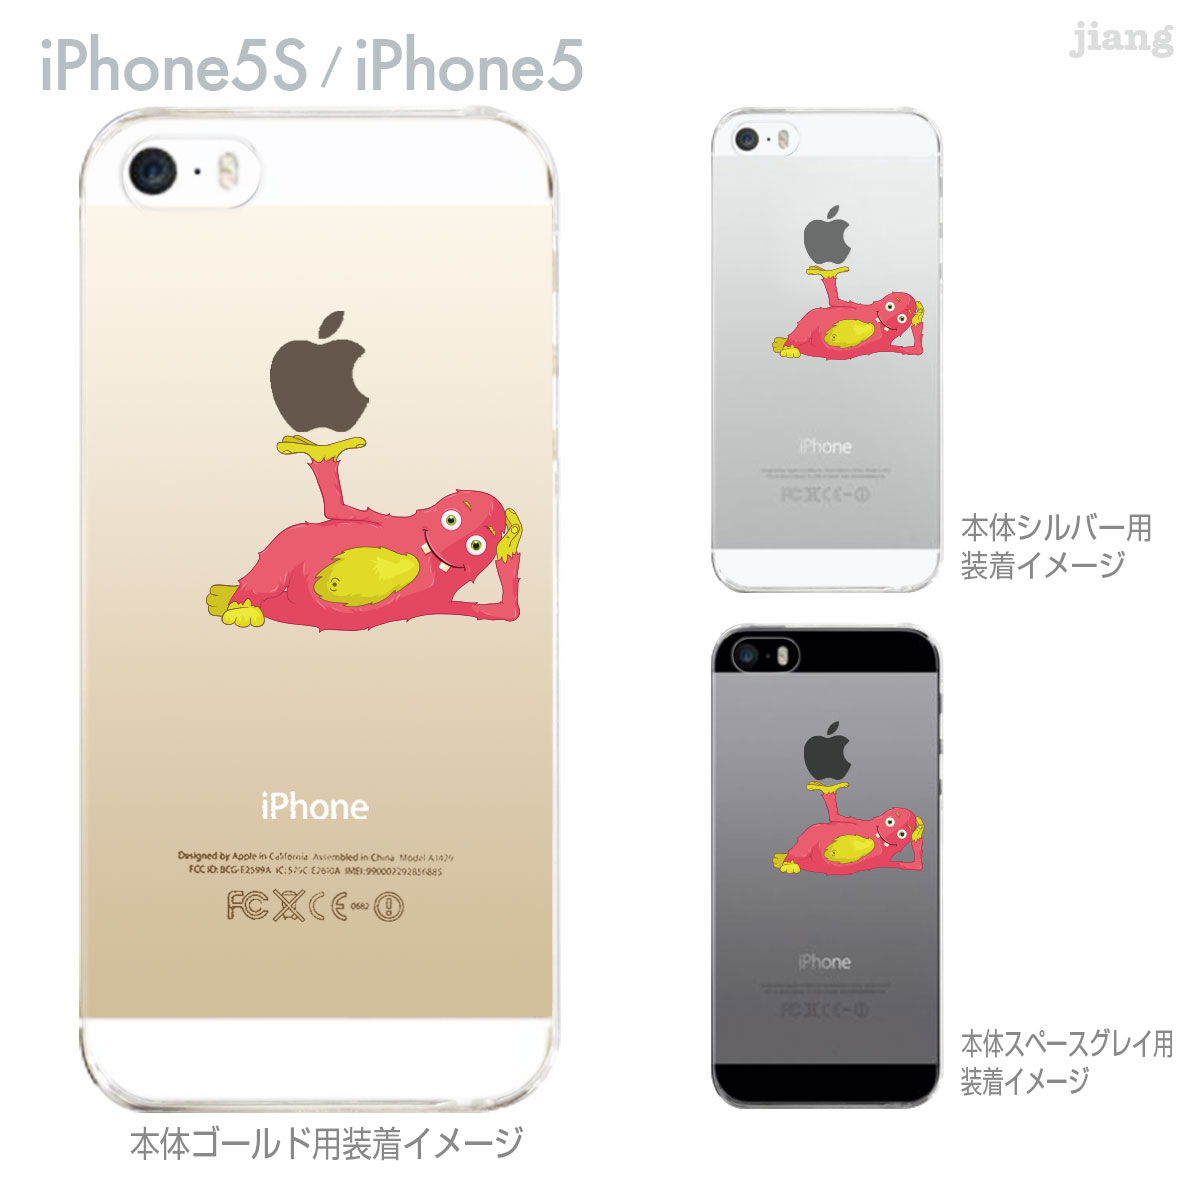 iPhone5s iPhone5 Clear Arts カバー ケース スマホケース クリアケース かわいい おしゃれ ピンクモンスター 01-ip5s-ca0106